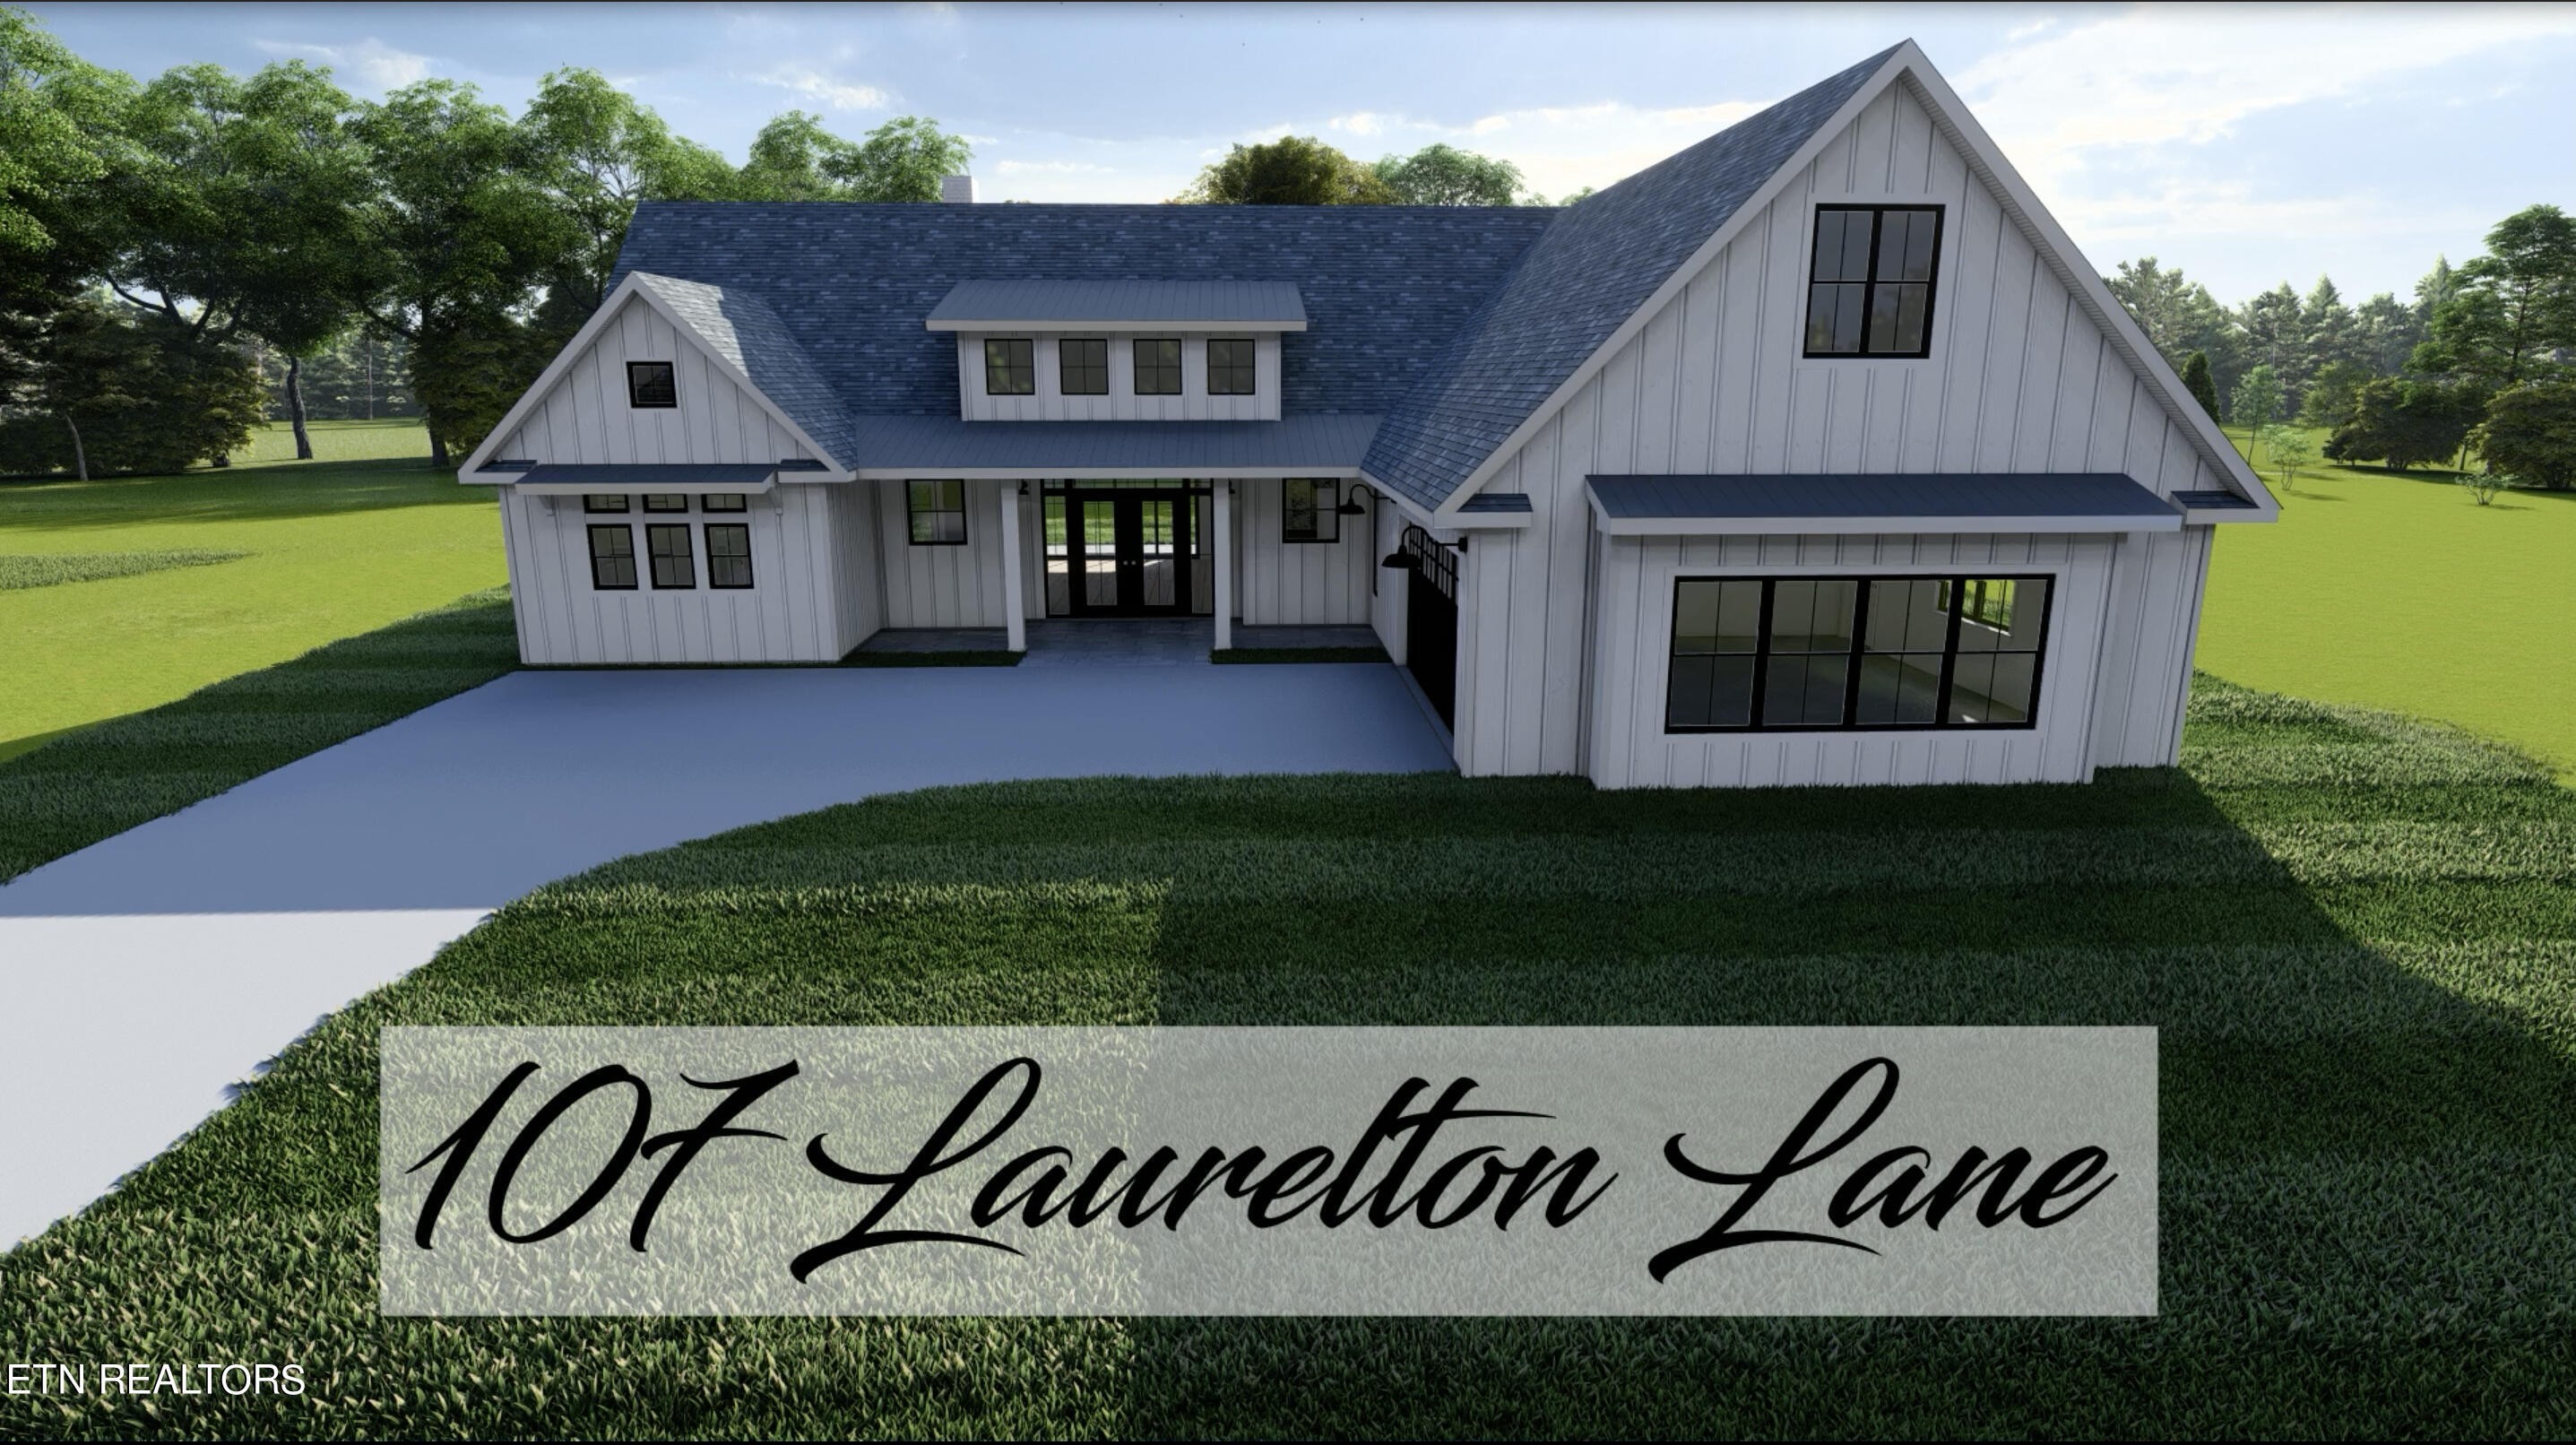 1. 107 Laurelton Lane